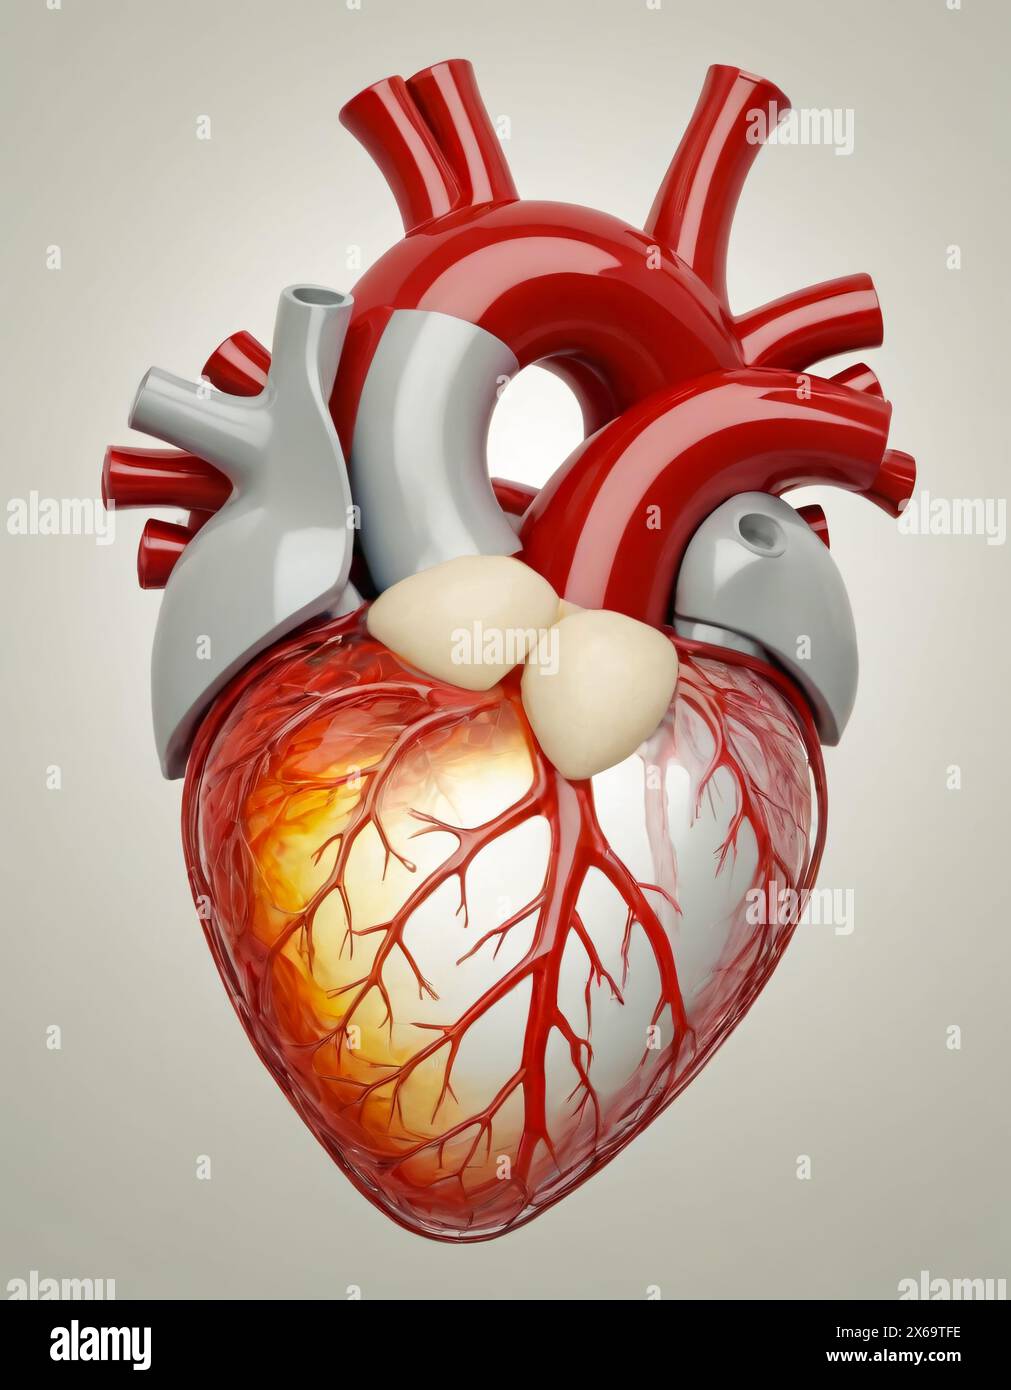 Menschliches Herz, futuristische Darstellung einer künstlichen bionischen Transplantationsminimalplastik Stockfoto